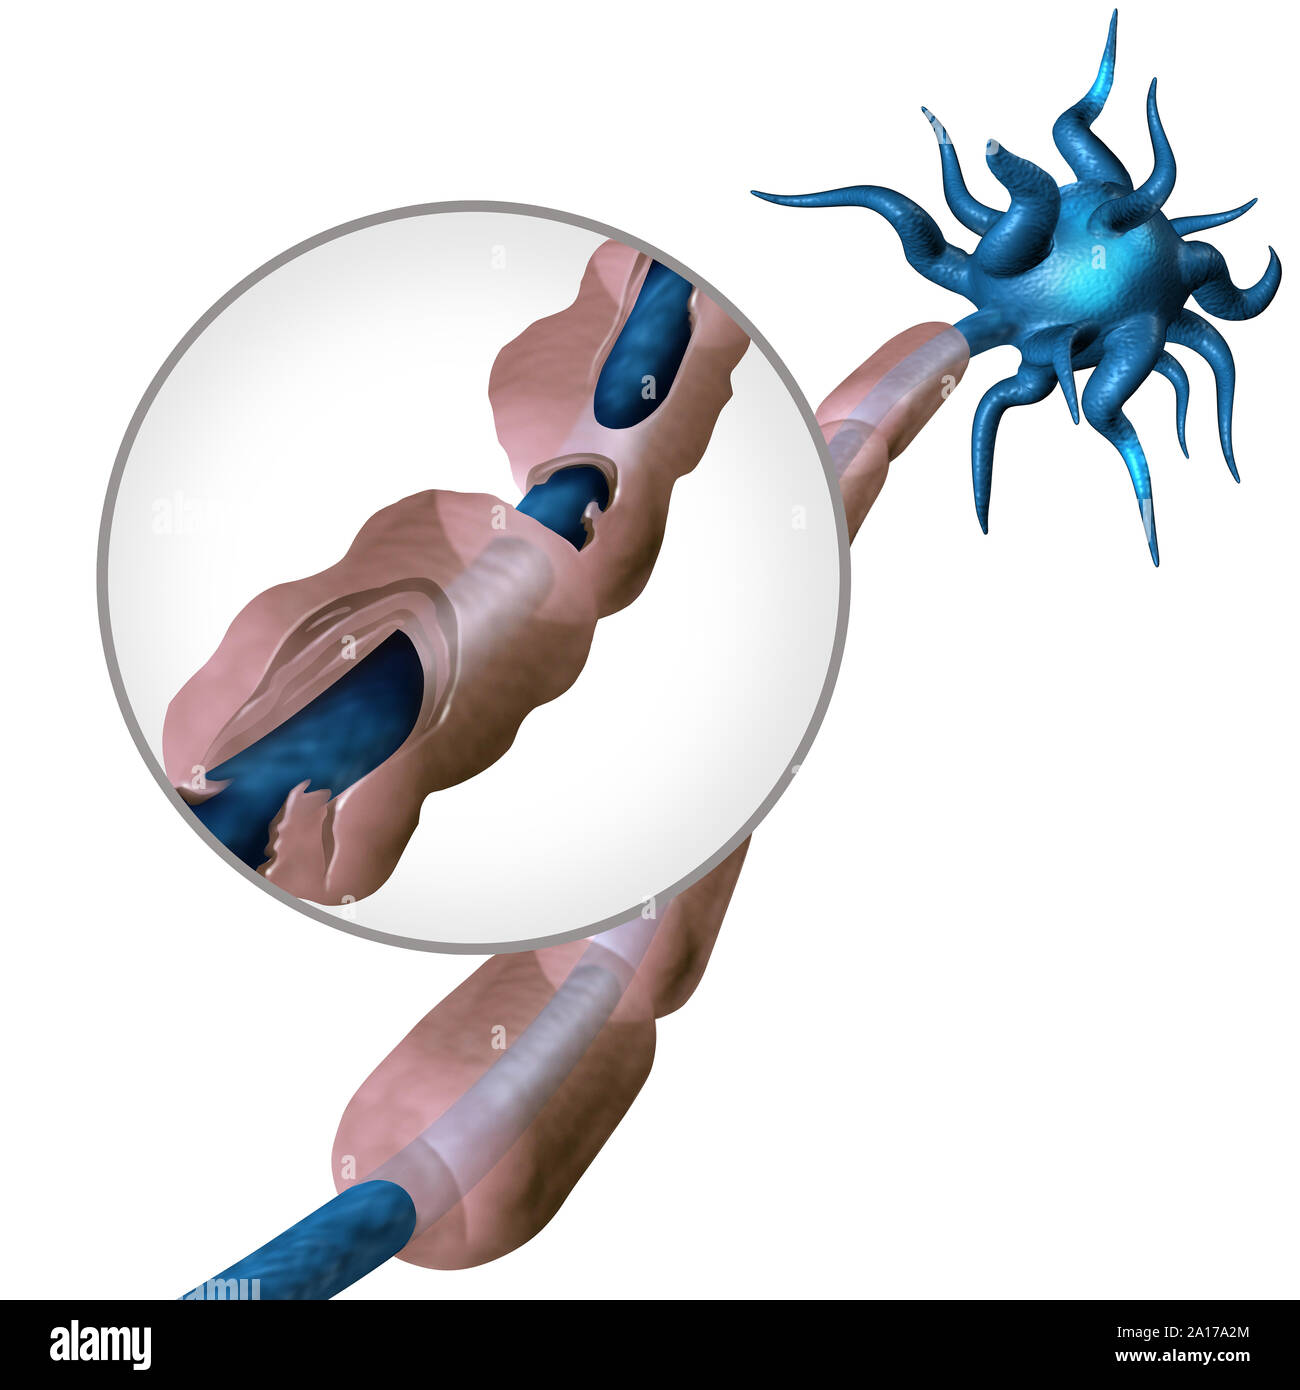 Multiple Sklerose Diagramm Konzept oder MS Autoimmunkrankheit Anatomie mit gesunden Nerv und beschädigte Myelin mit freiliegender Faser mit scarrred schwann. Stockfoto